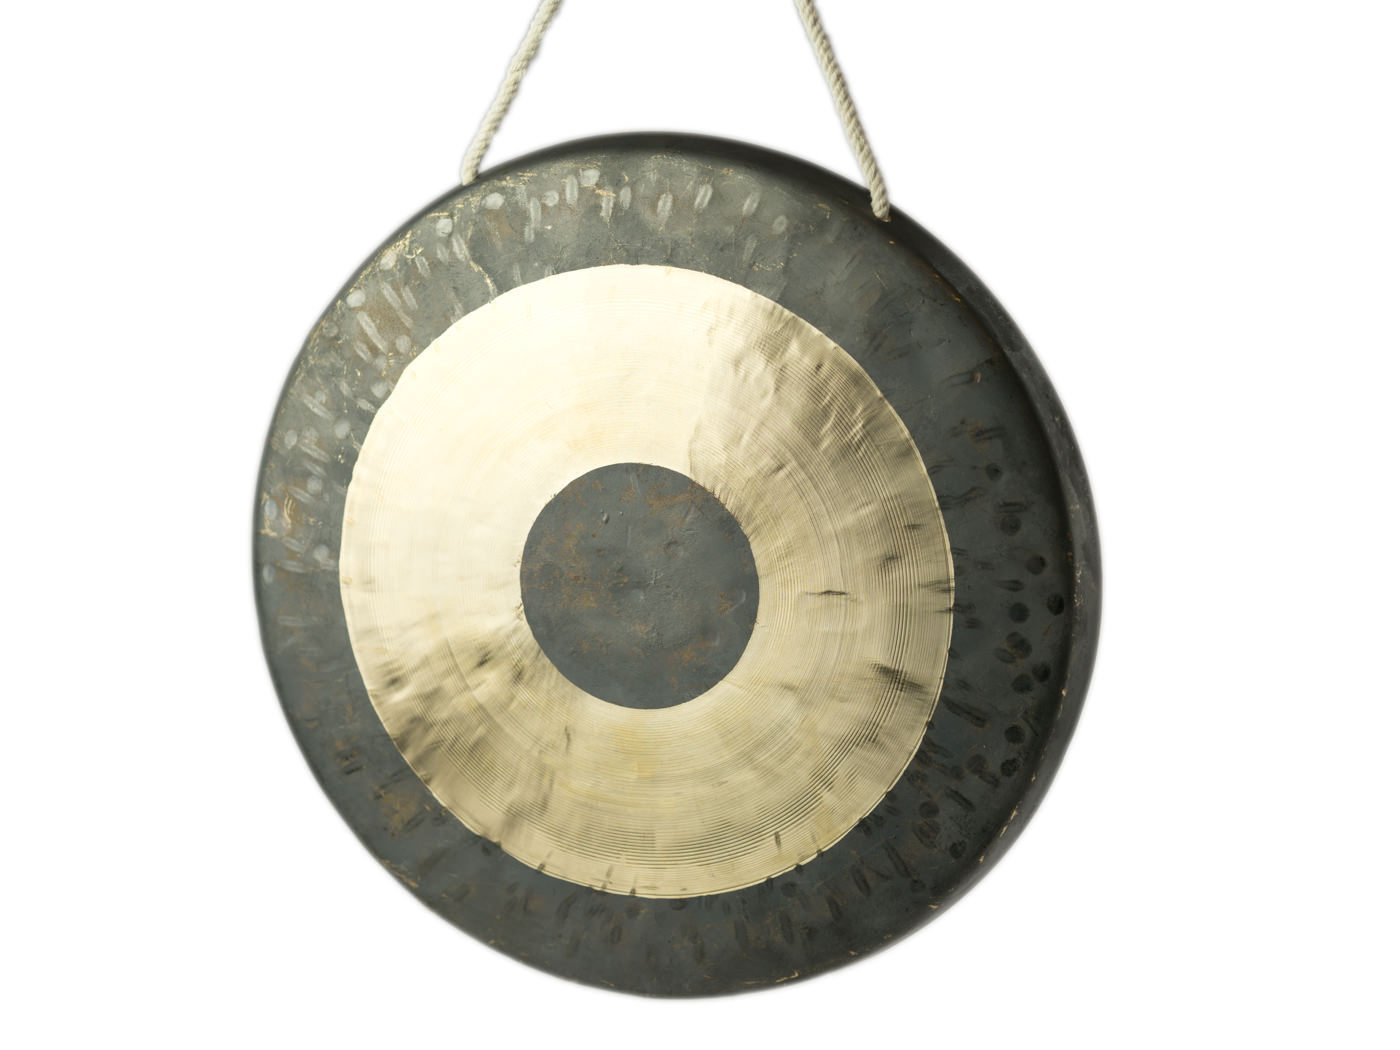 TamTam-Gong ⌀ ca.30 cm, seitliche Ansicht